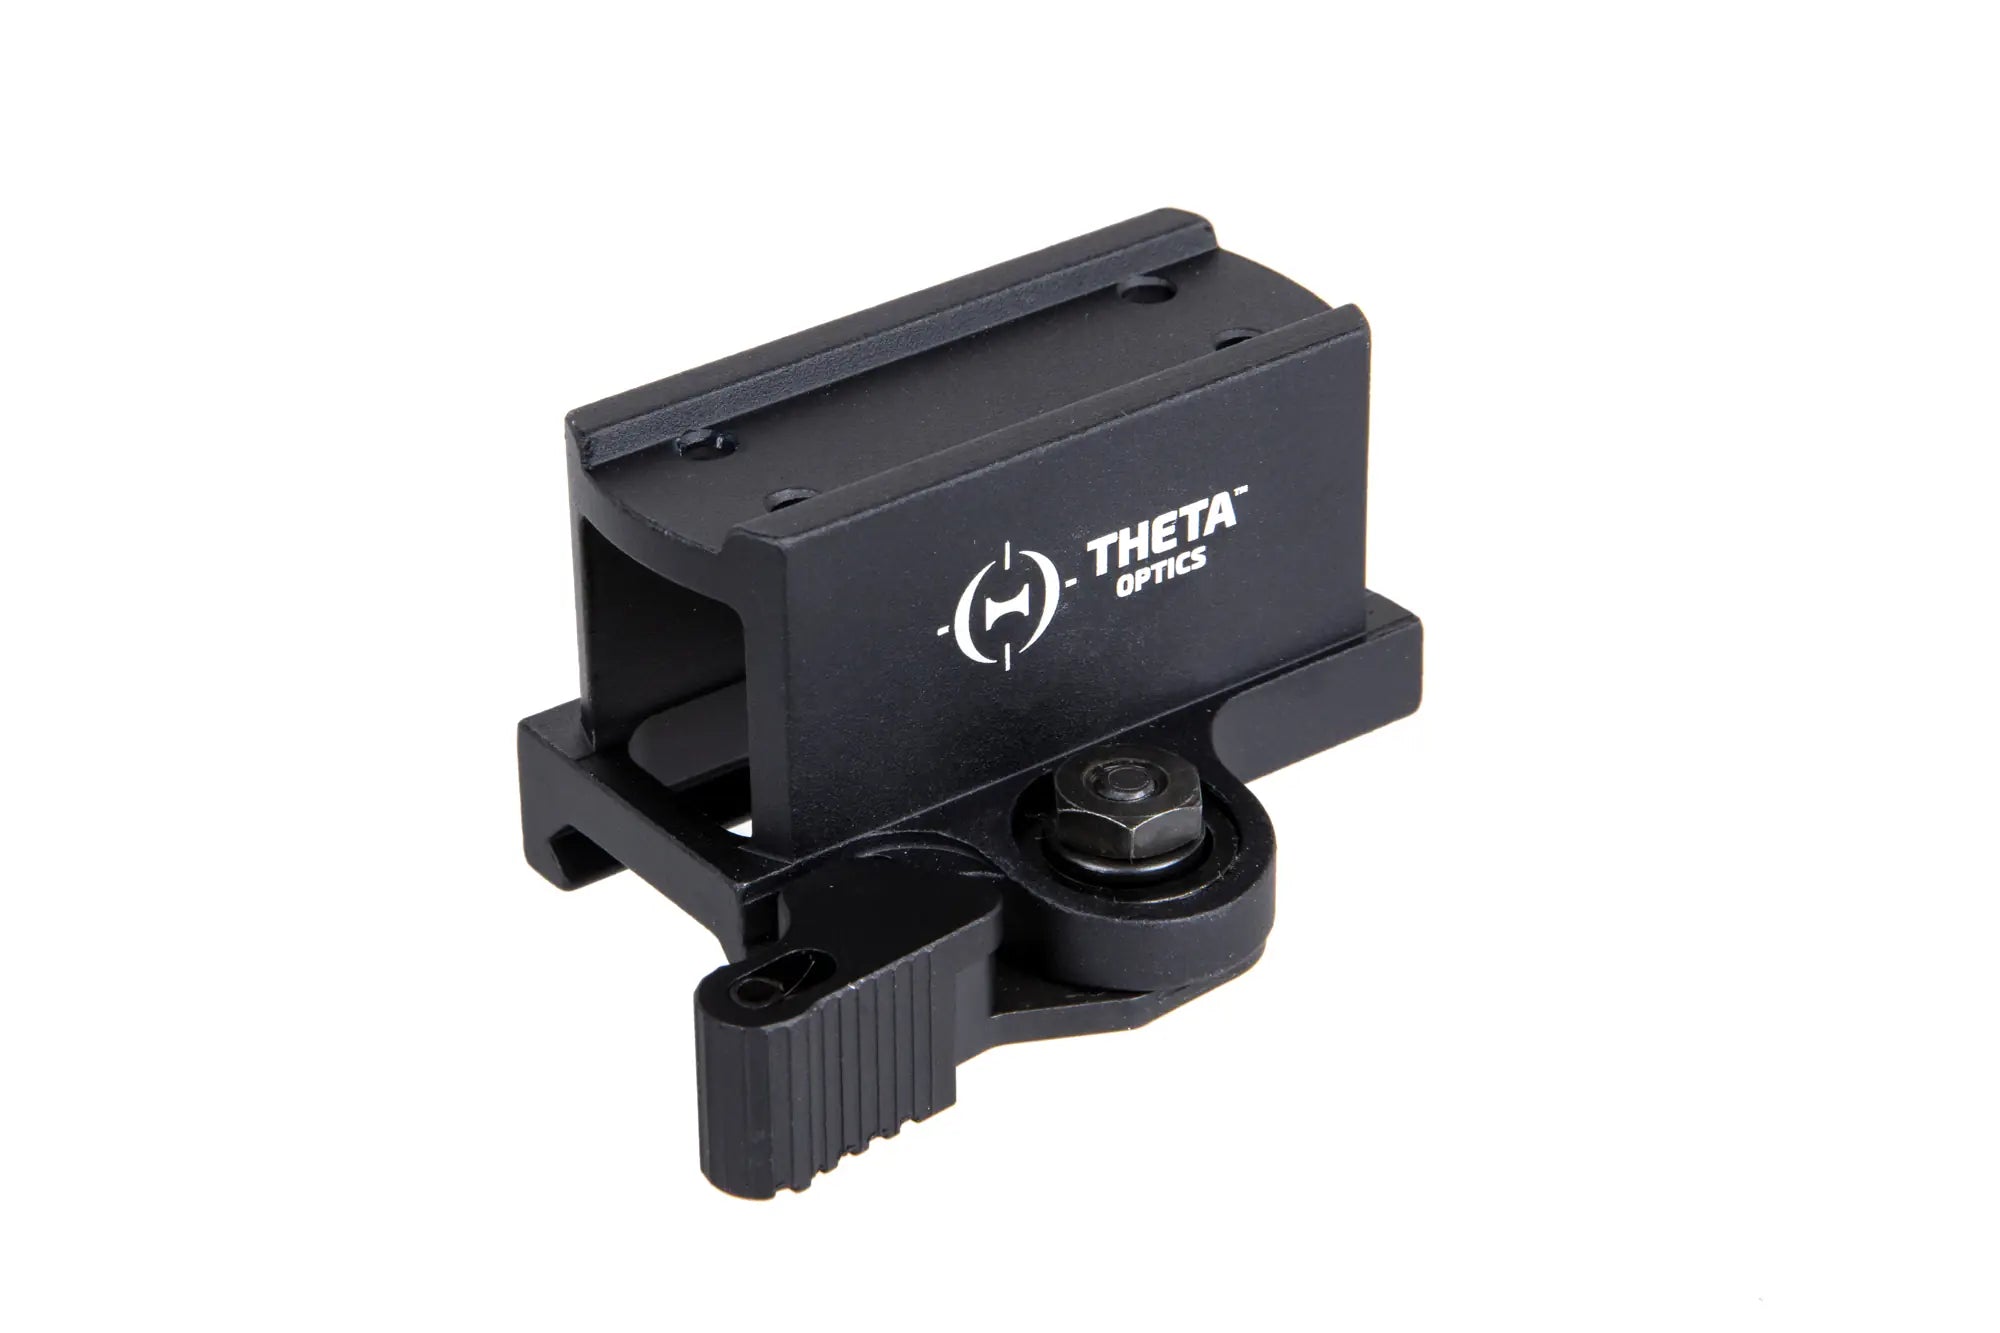 High QD mount for Theta Optics Compact collimators